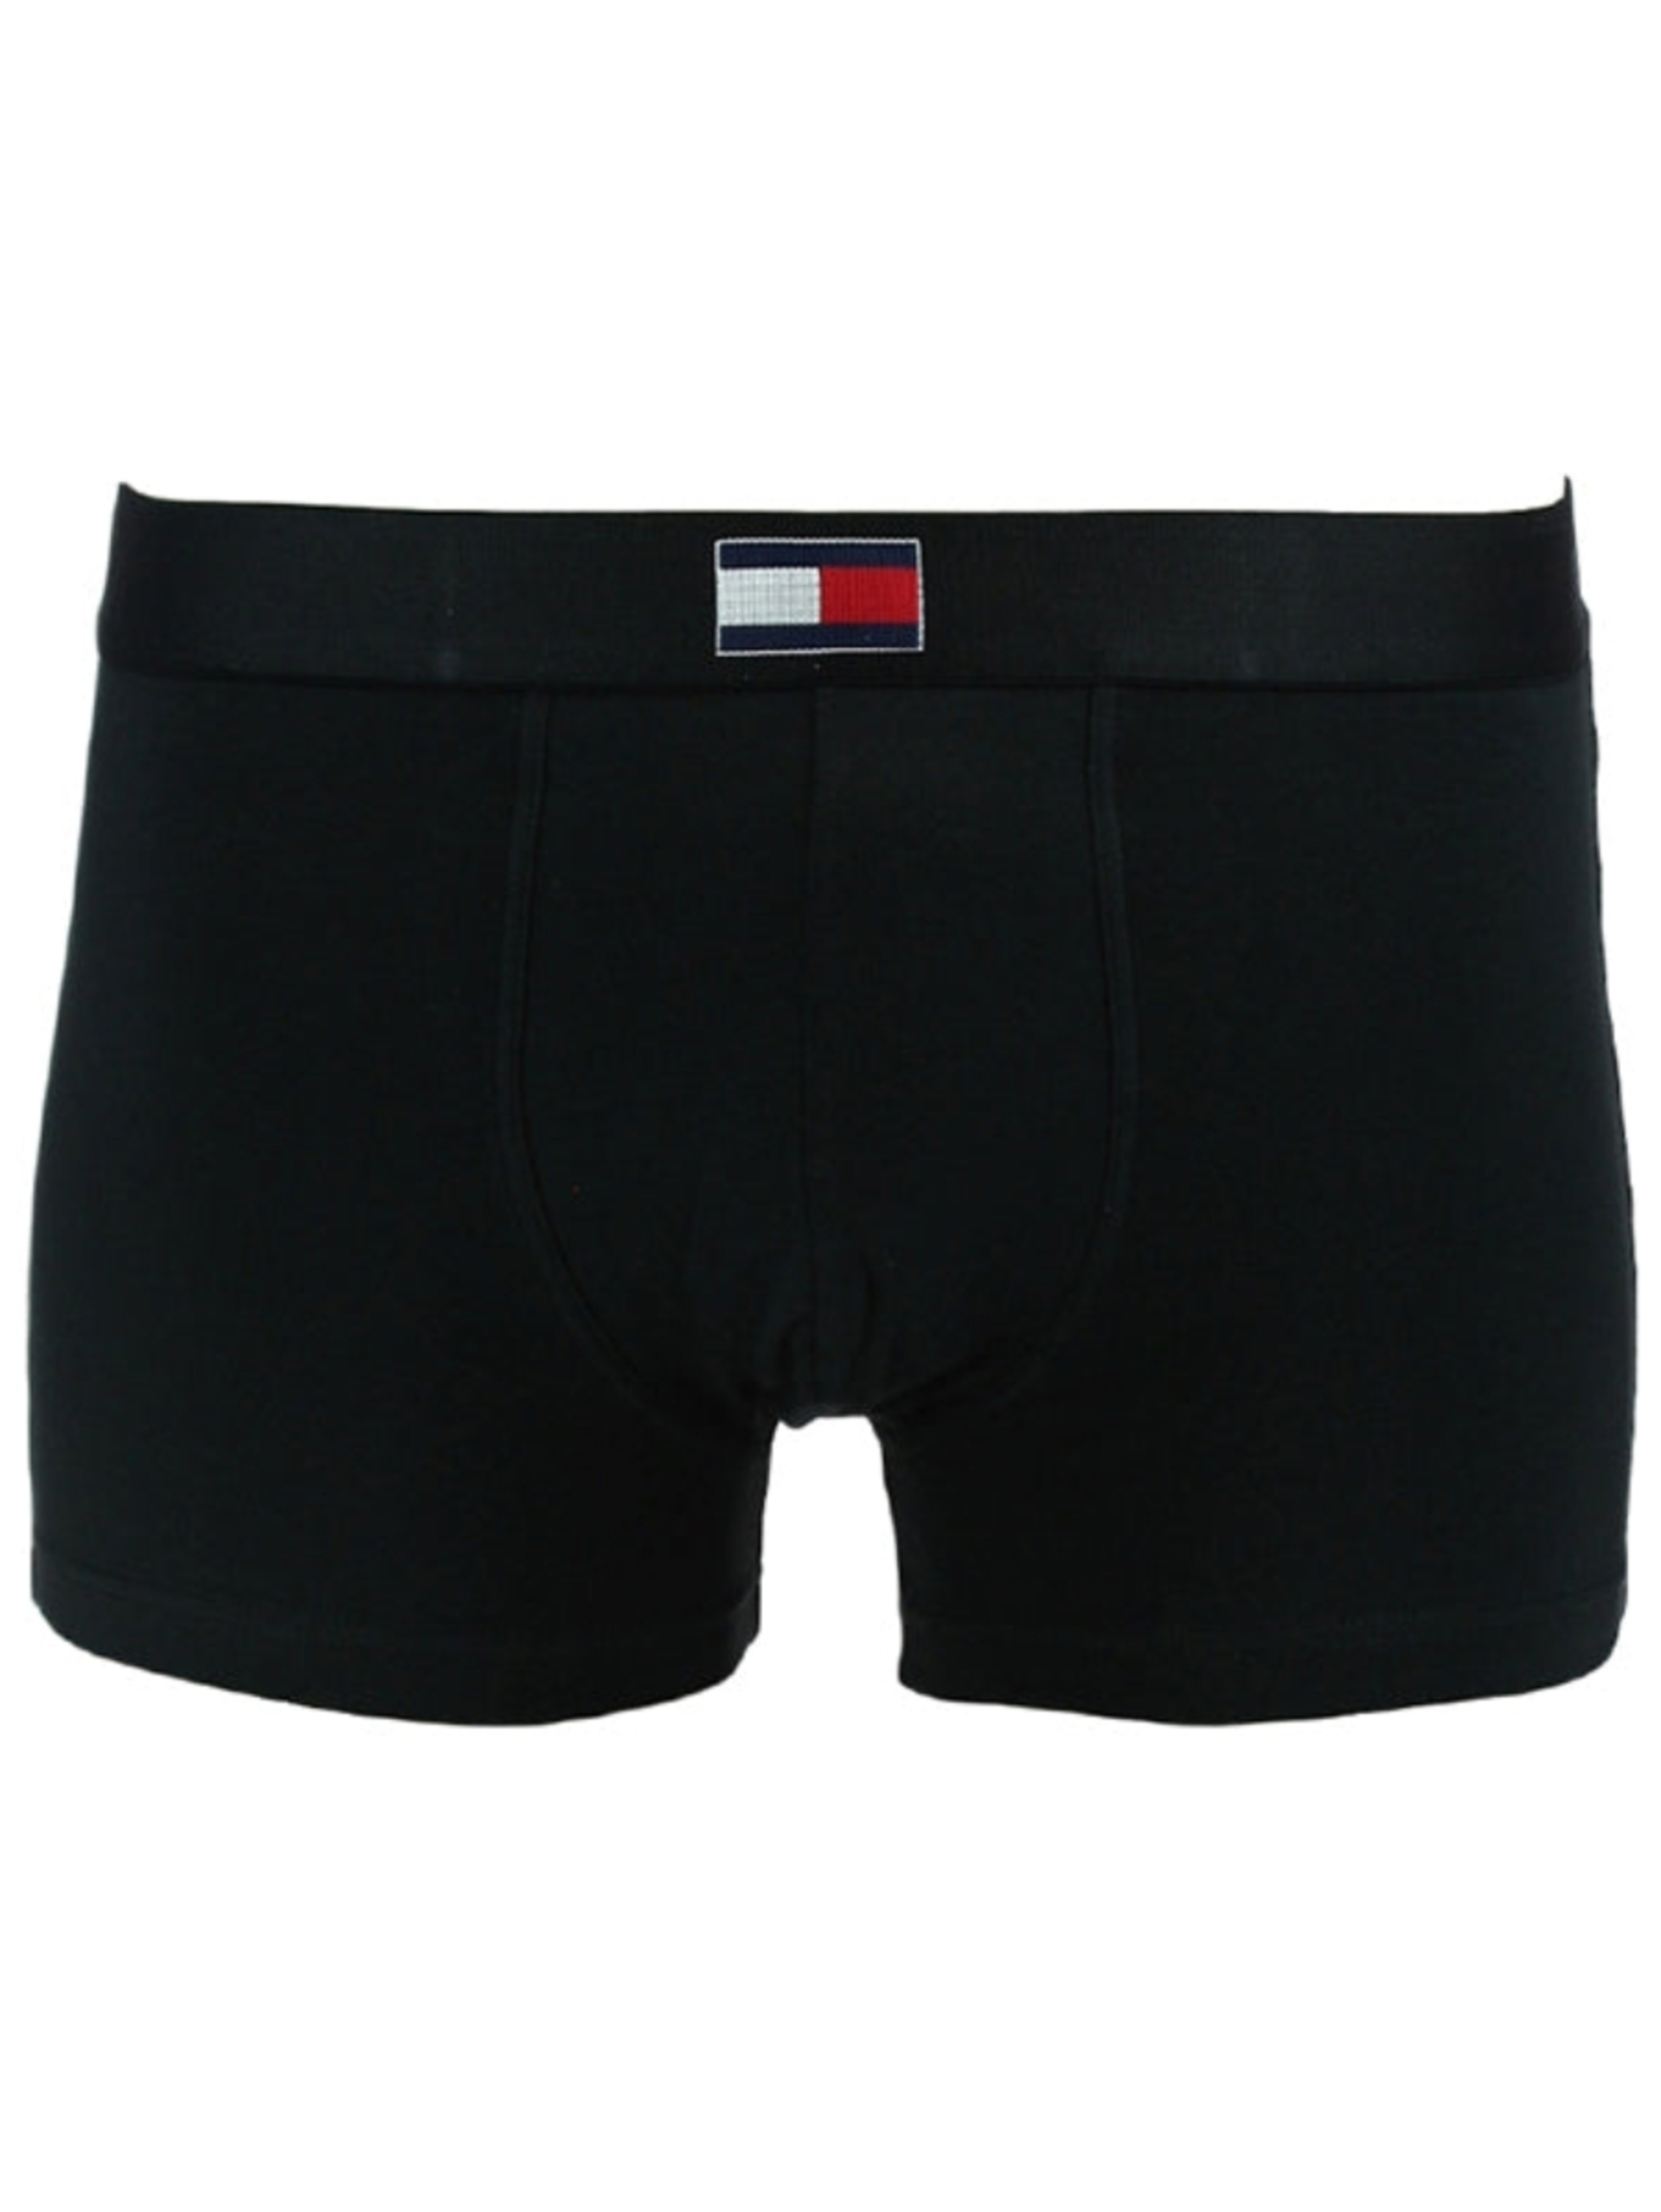 Tommy Hilfiger pánské černé boxerky - XL (990)